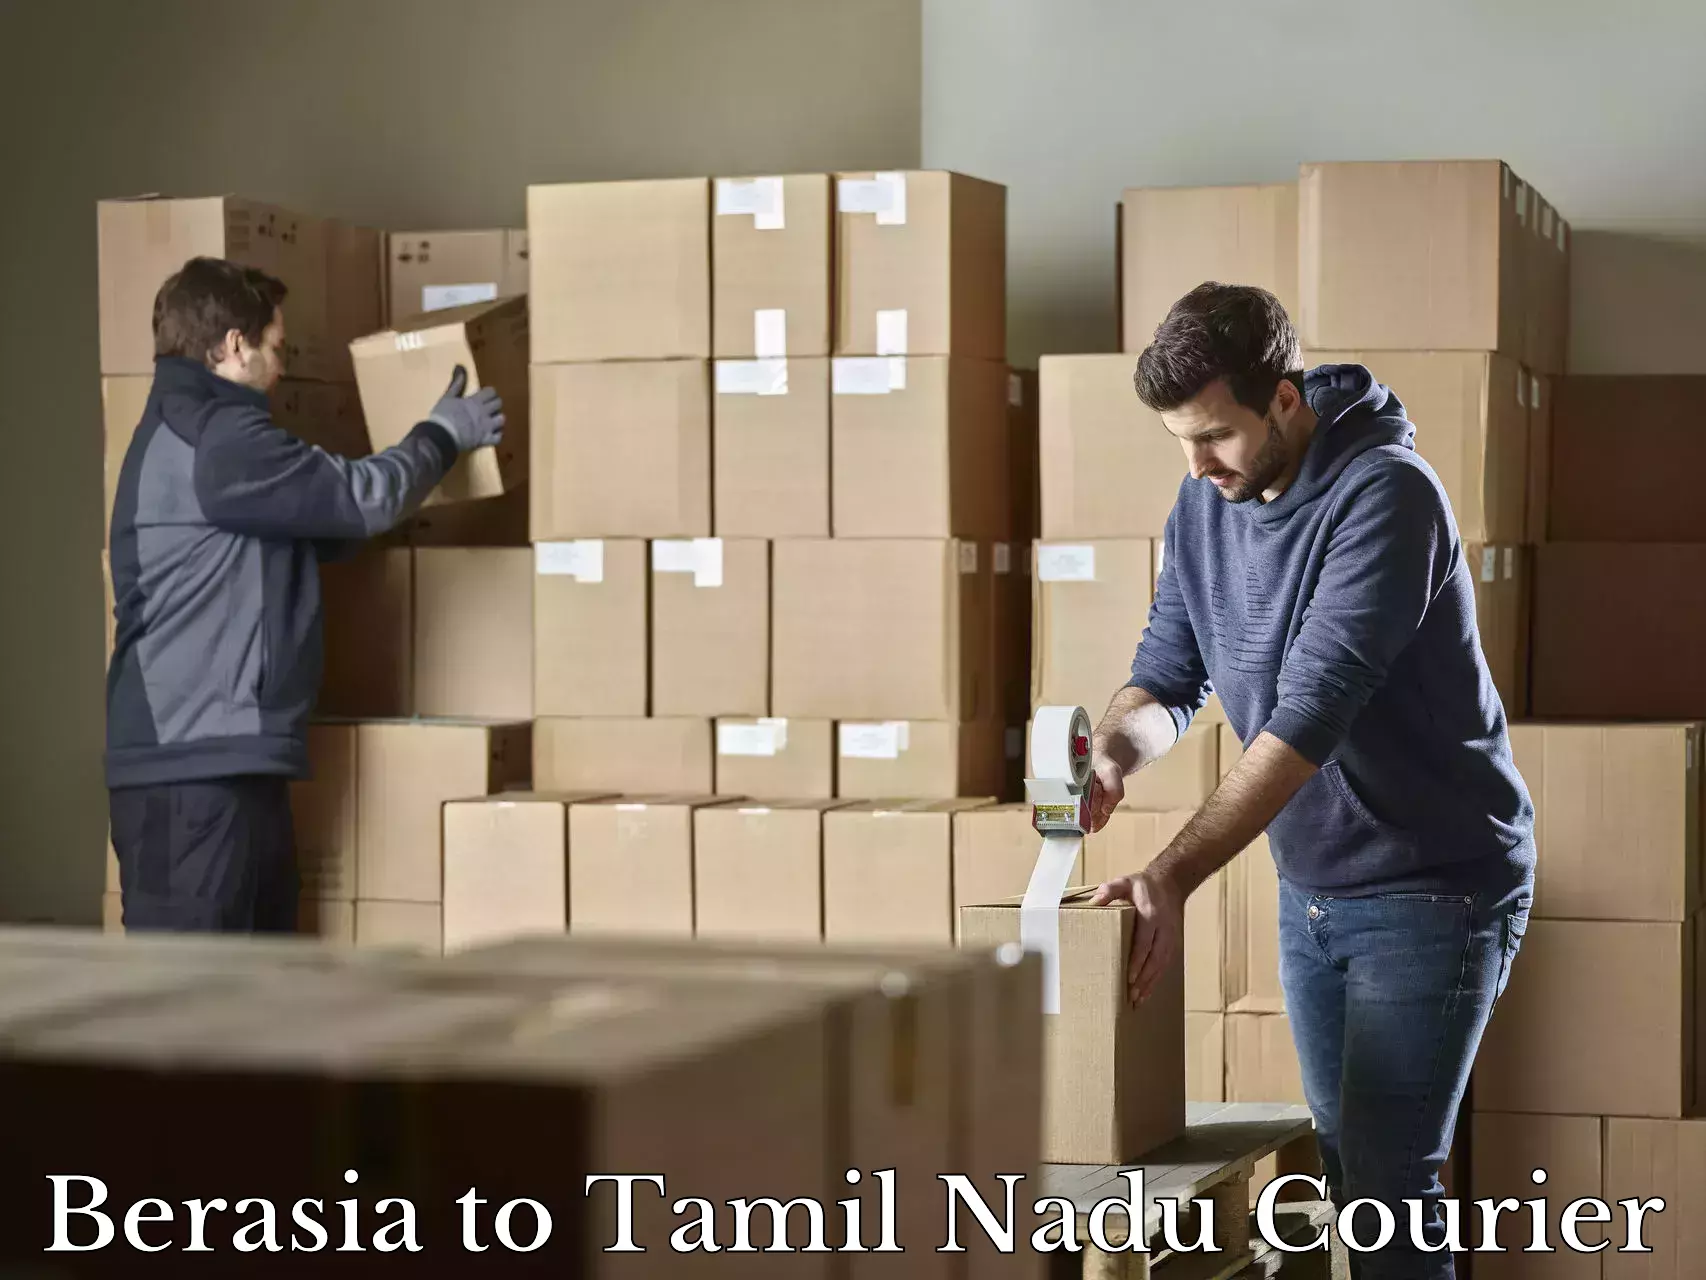 Door-to-door baggage service Berasia to Tamil Nadu